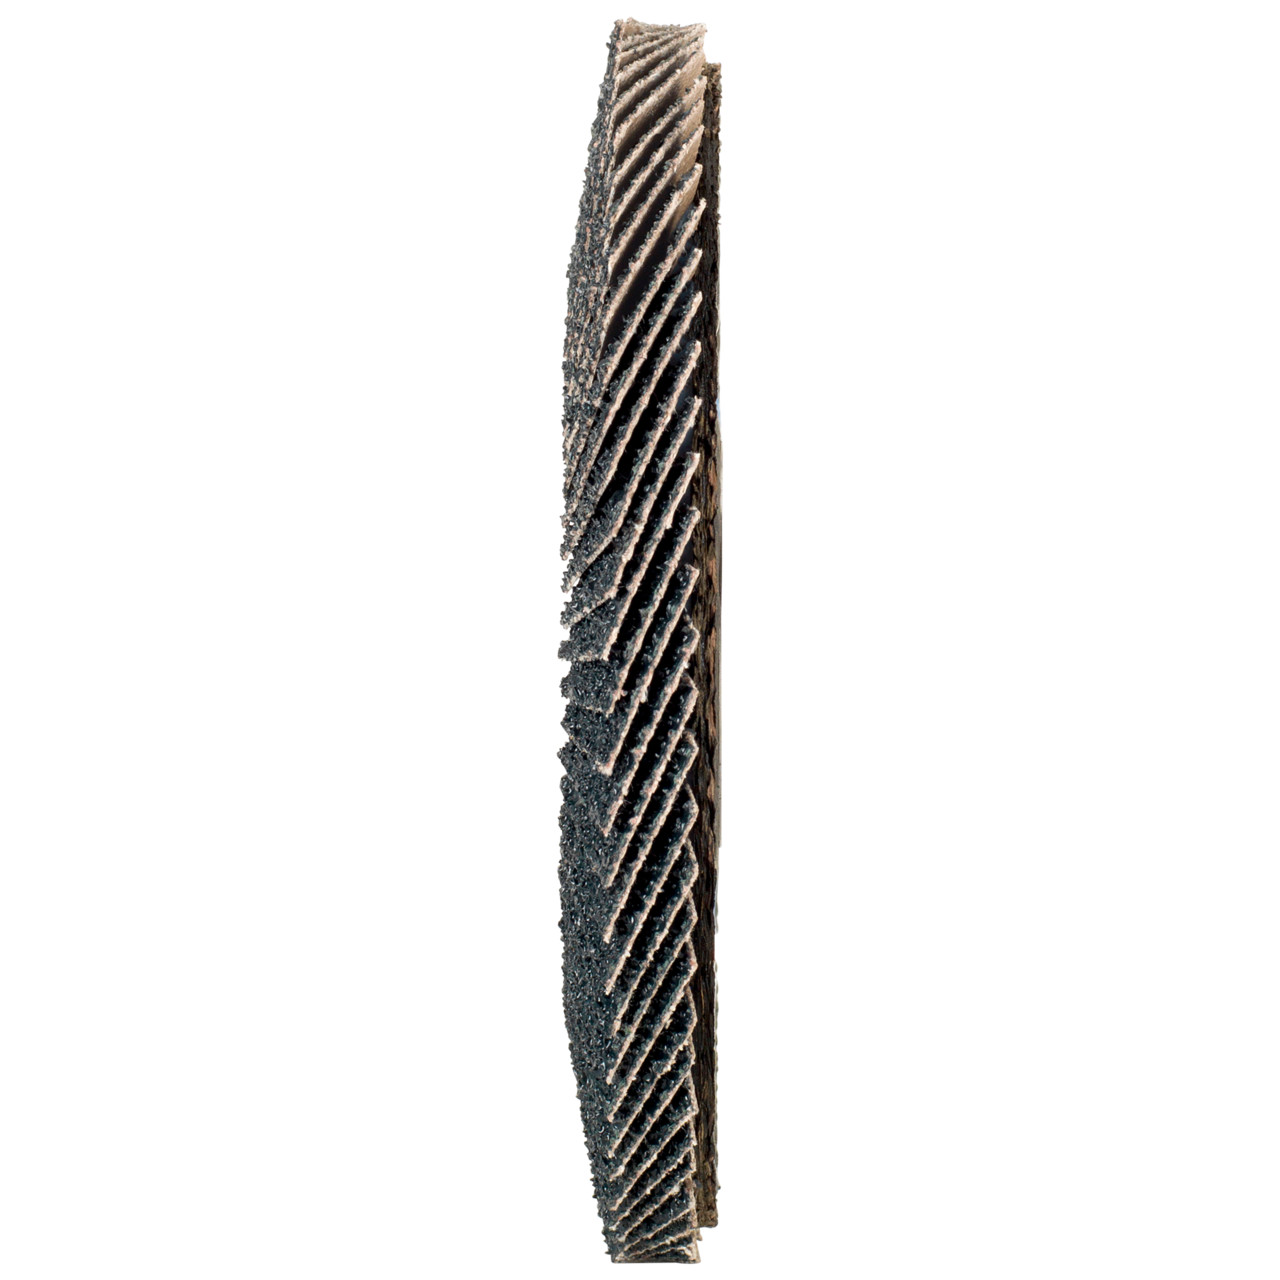 Tyrolit Arandela dentada DxH 150x22,2 2en1 para acero y acero inoxidable, P40, forma: 27A - versión desplazada (versión con cuerpo de soporte de fibra de vidrio), Art. 519212